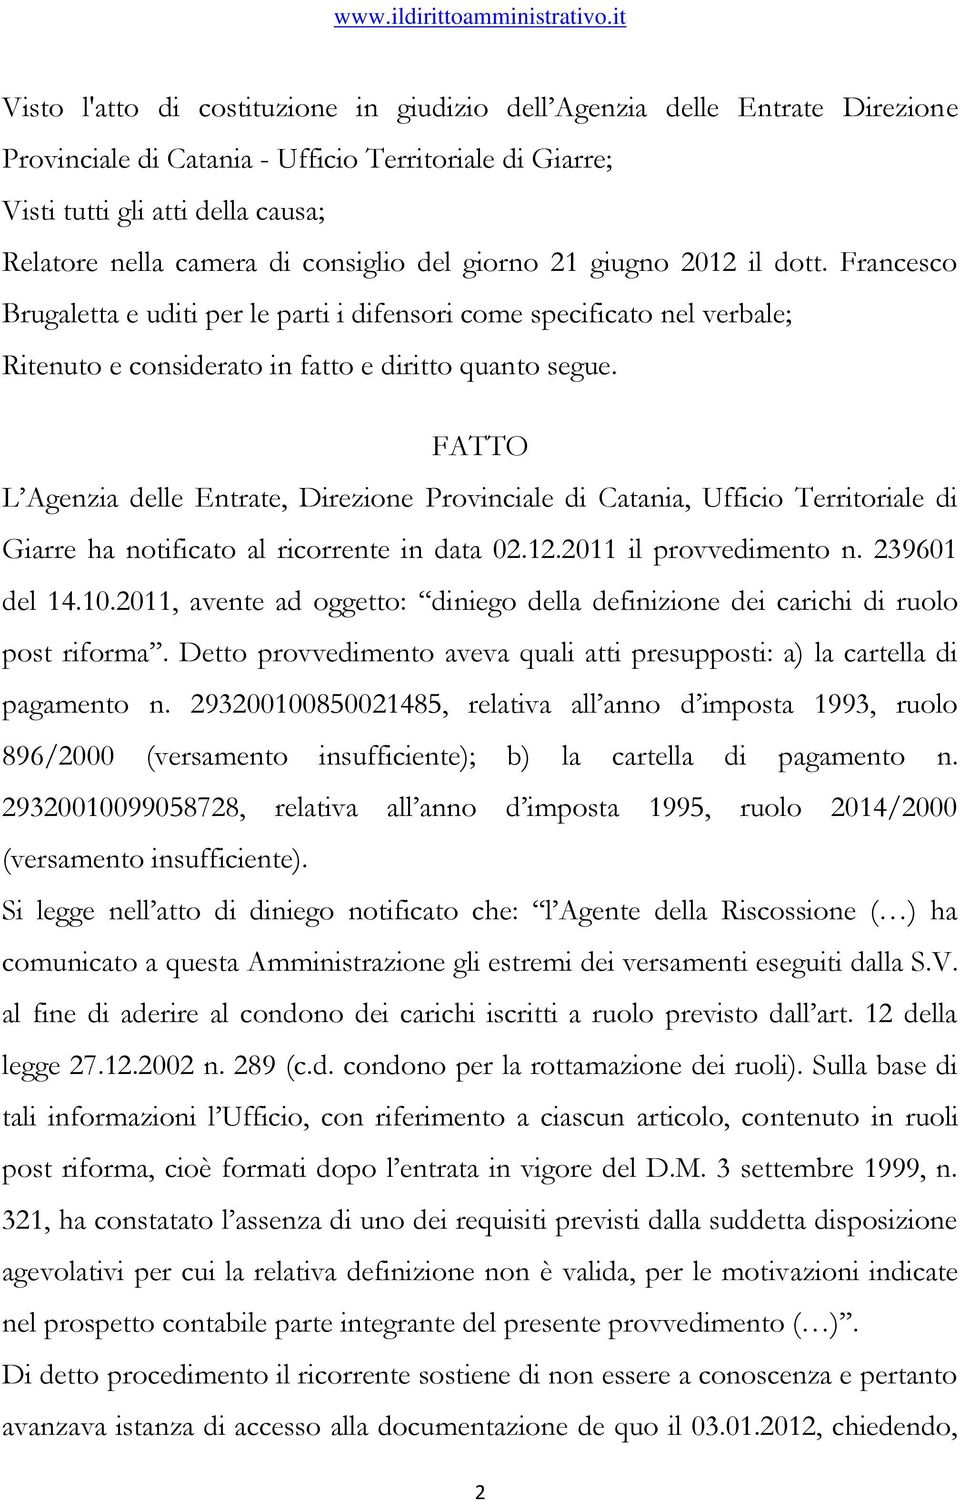 FATTO L Agenzia delle Entrate, Direzione Provinciale di Catania, Ufficio Territoriale di Giarre ha notificato al ricorrente in data 02.12.2011 il provvedimento n. 239601 del 14.10.